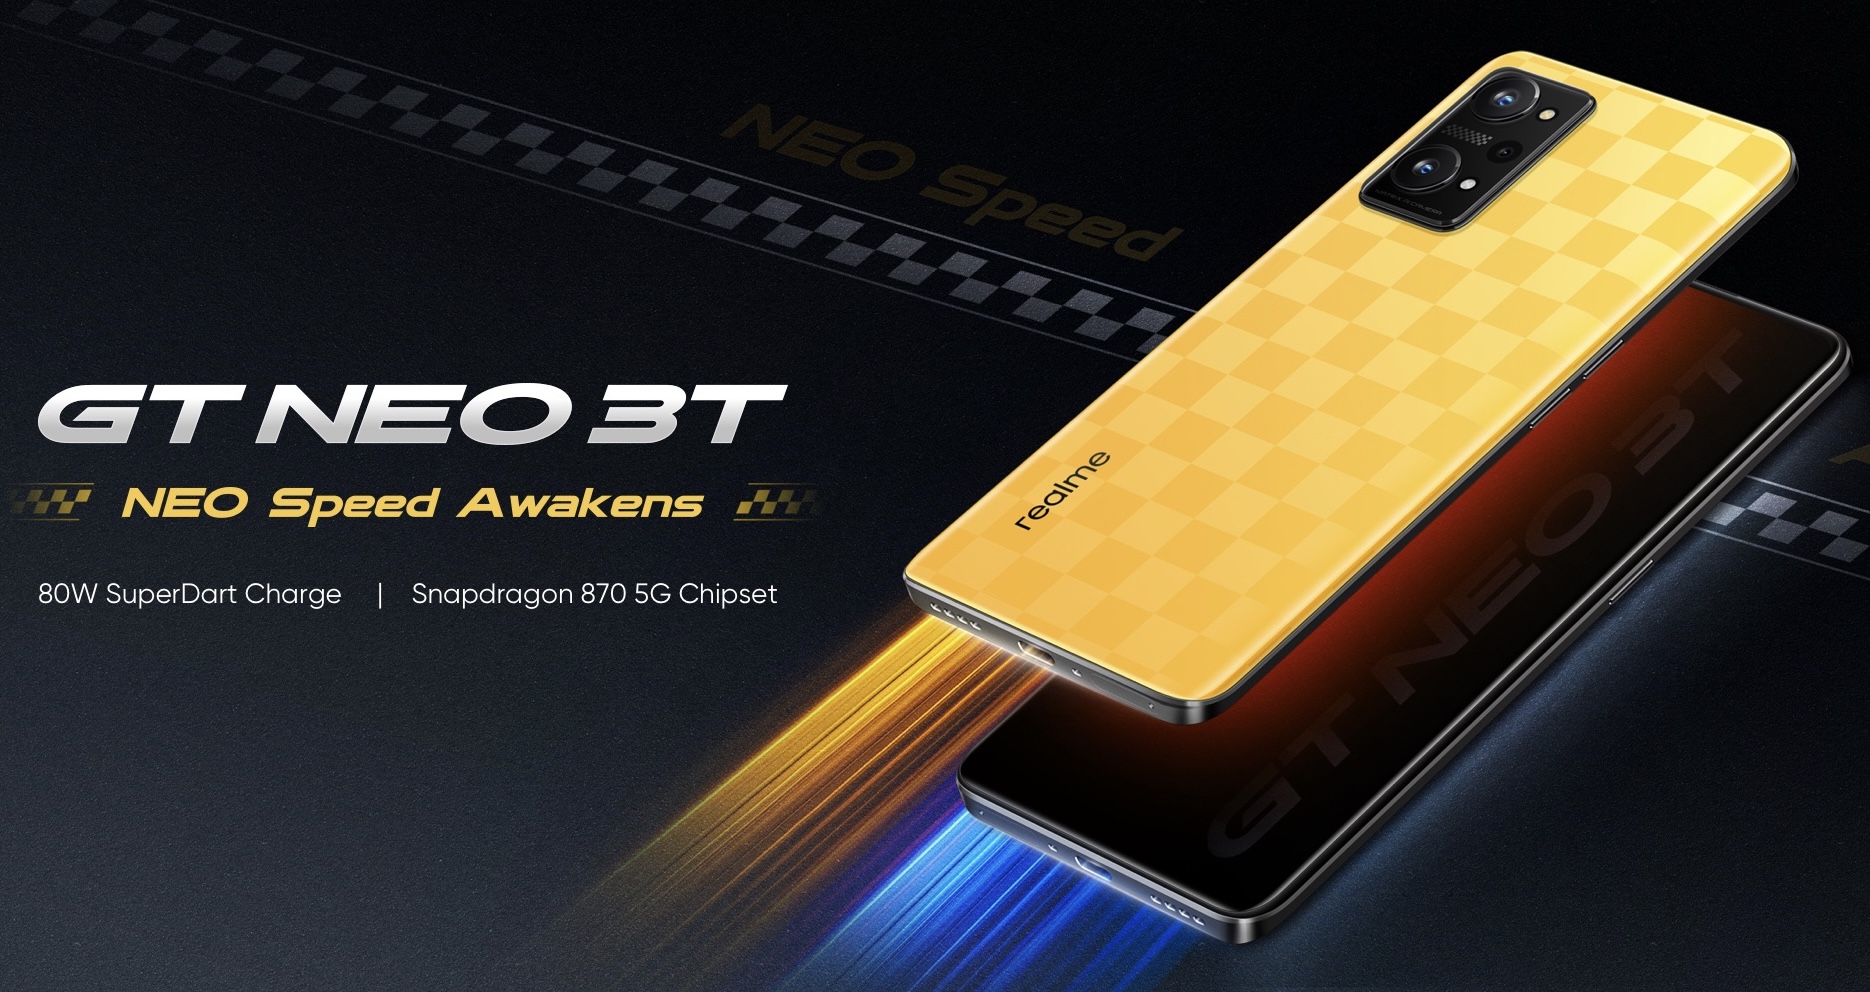 Harga dan Spesifikasi Realme GT Neo 3T Bertenaga Snapdragon 870 dan 80W SuperDart Charge